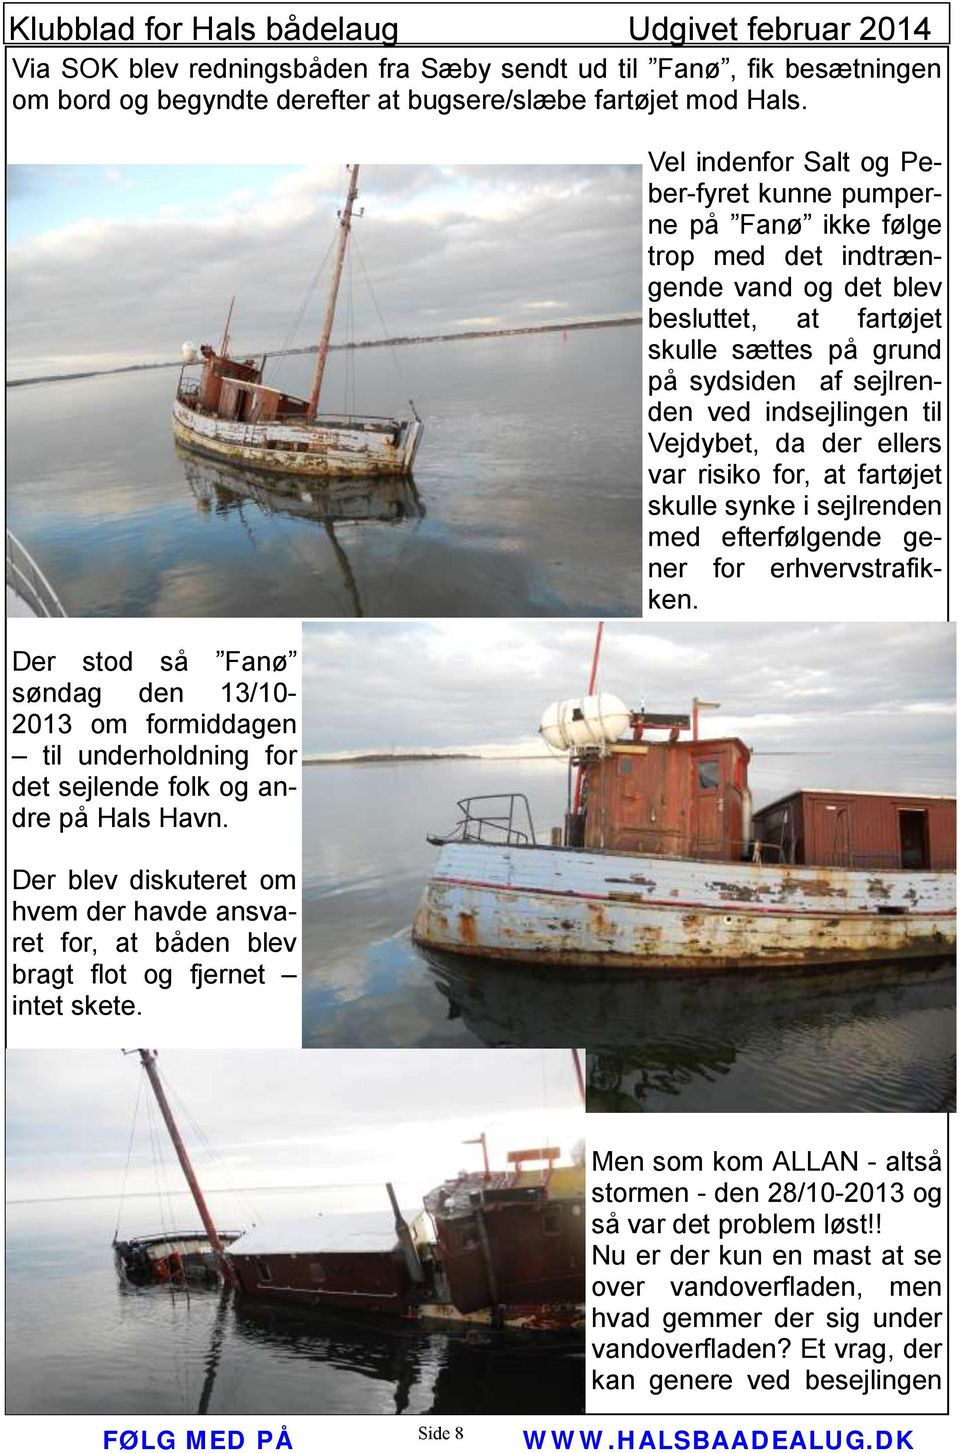 Der blev diskuteret om hvem der havde ansvaret for, at båden blev bragt flot og fjernet intet skete.